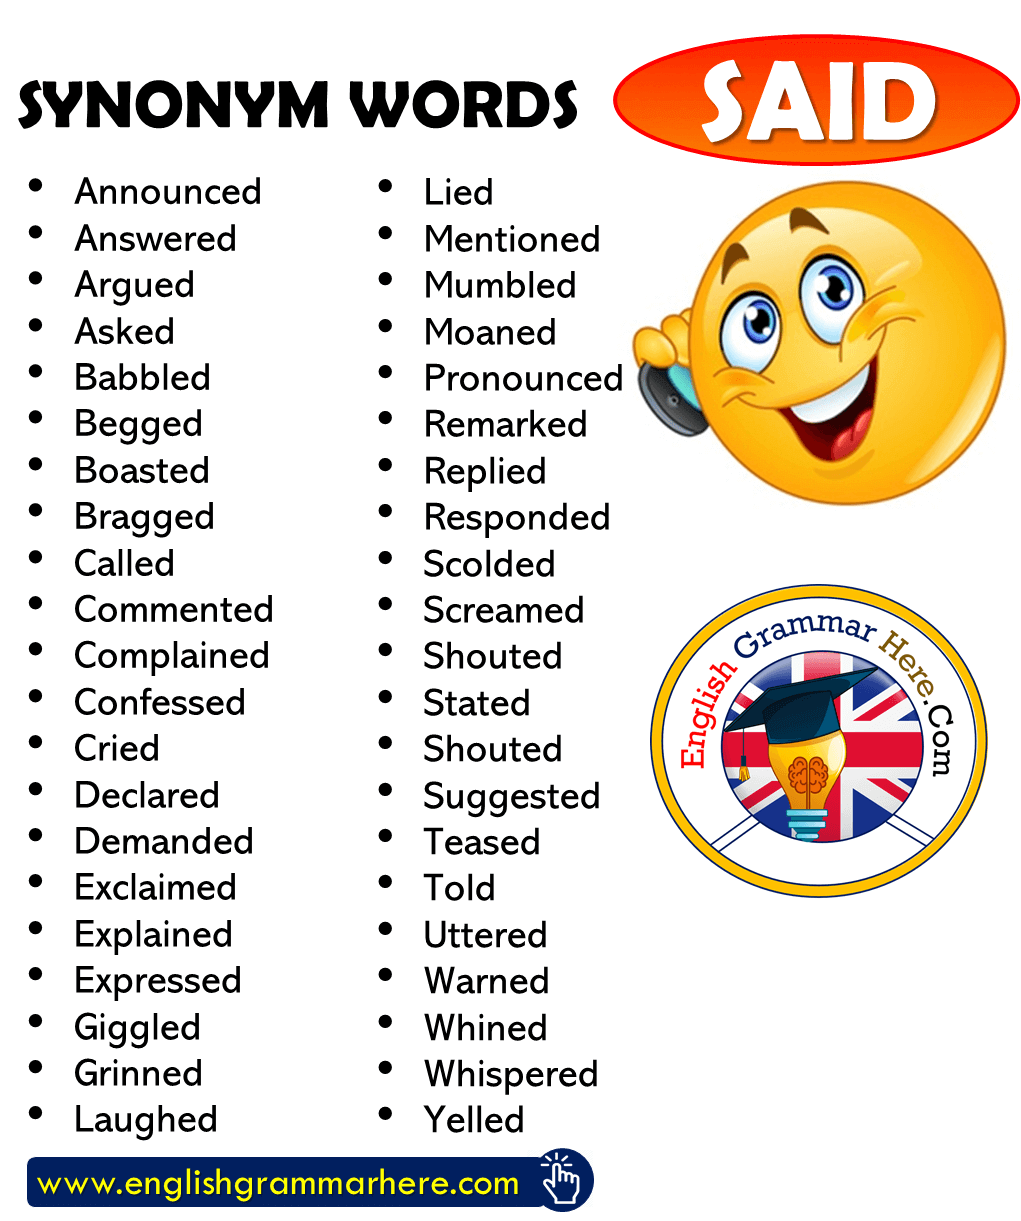 English Synonym Words – SAID, English Vocabulary